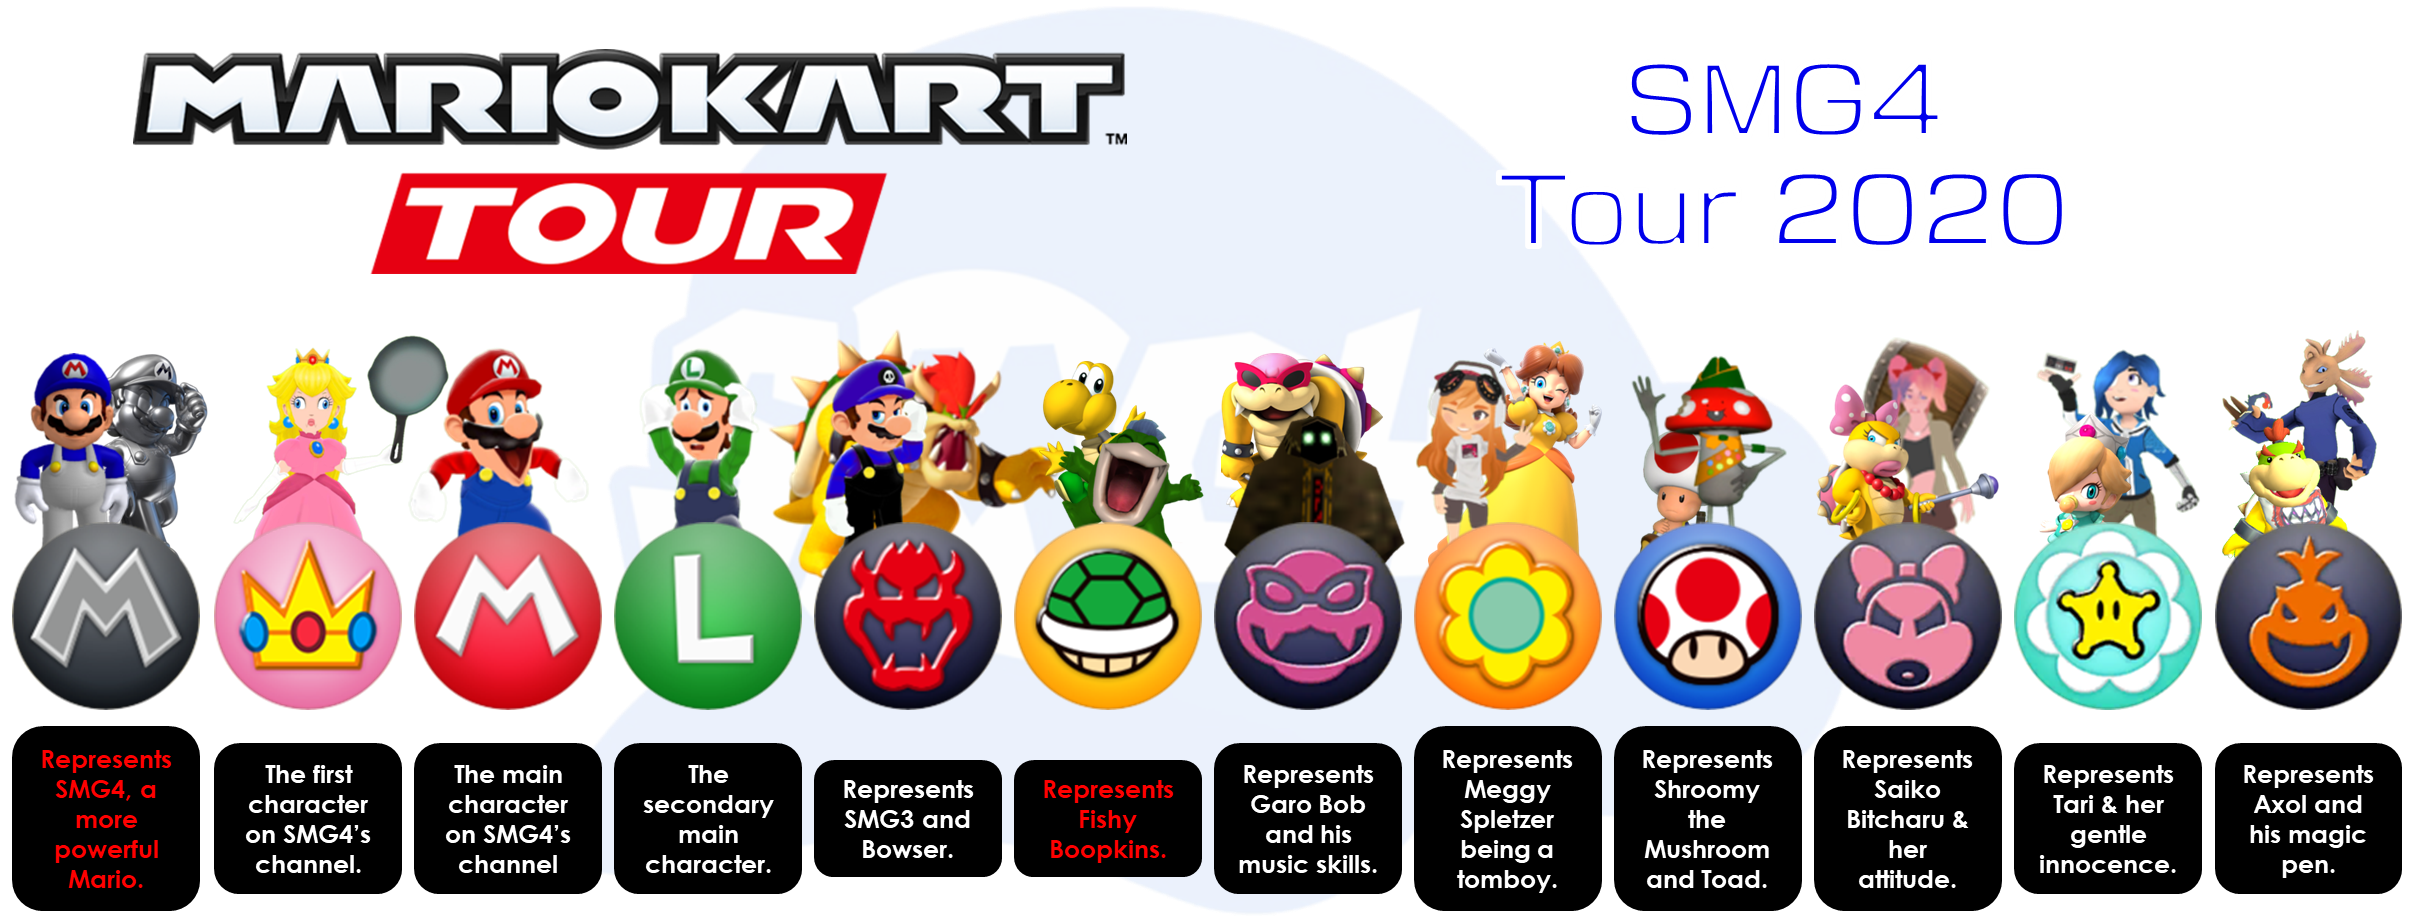 Mario Kart Tour - SMG4 Tour 2020 by mrbenio on DeviantArt